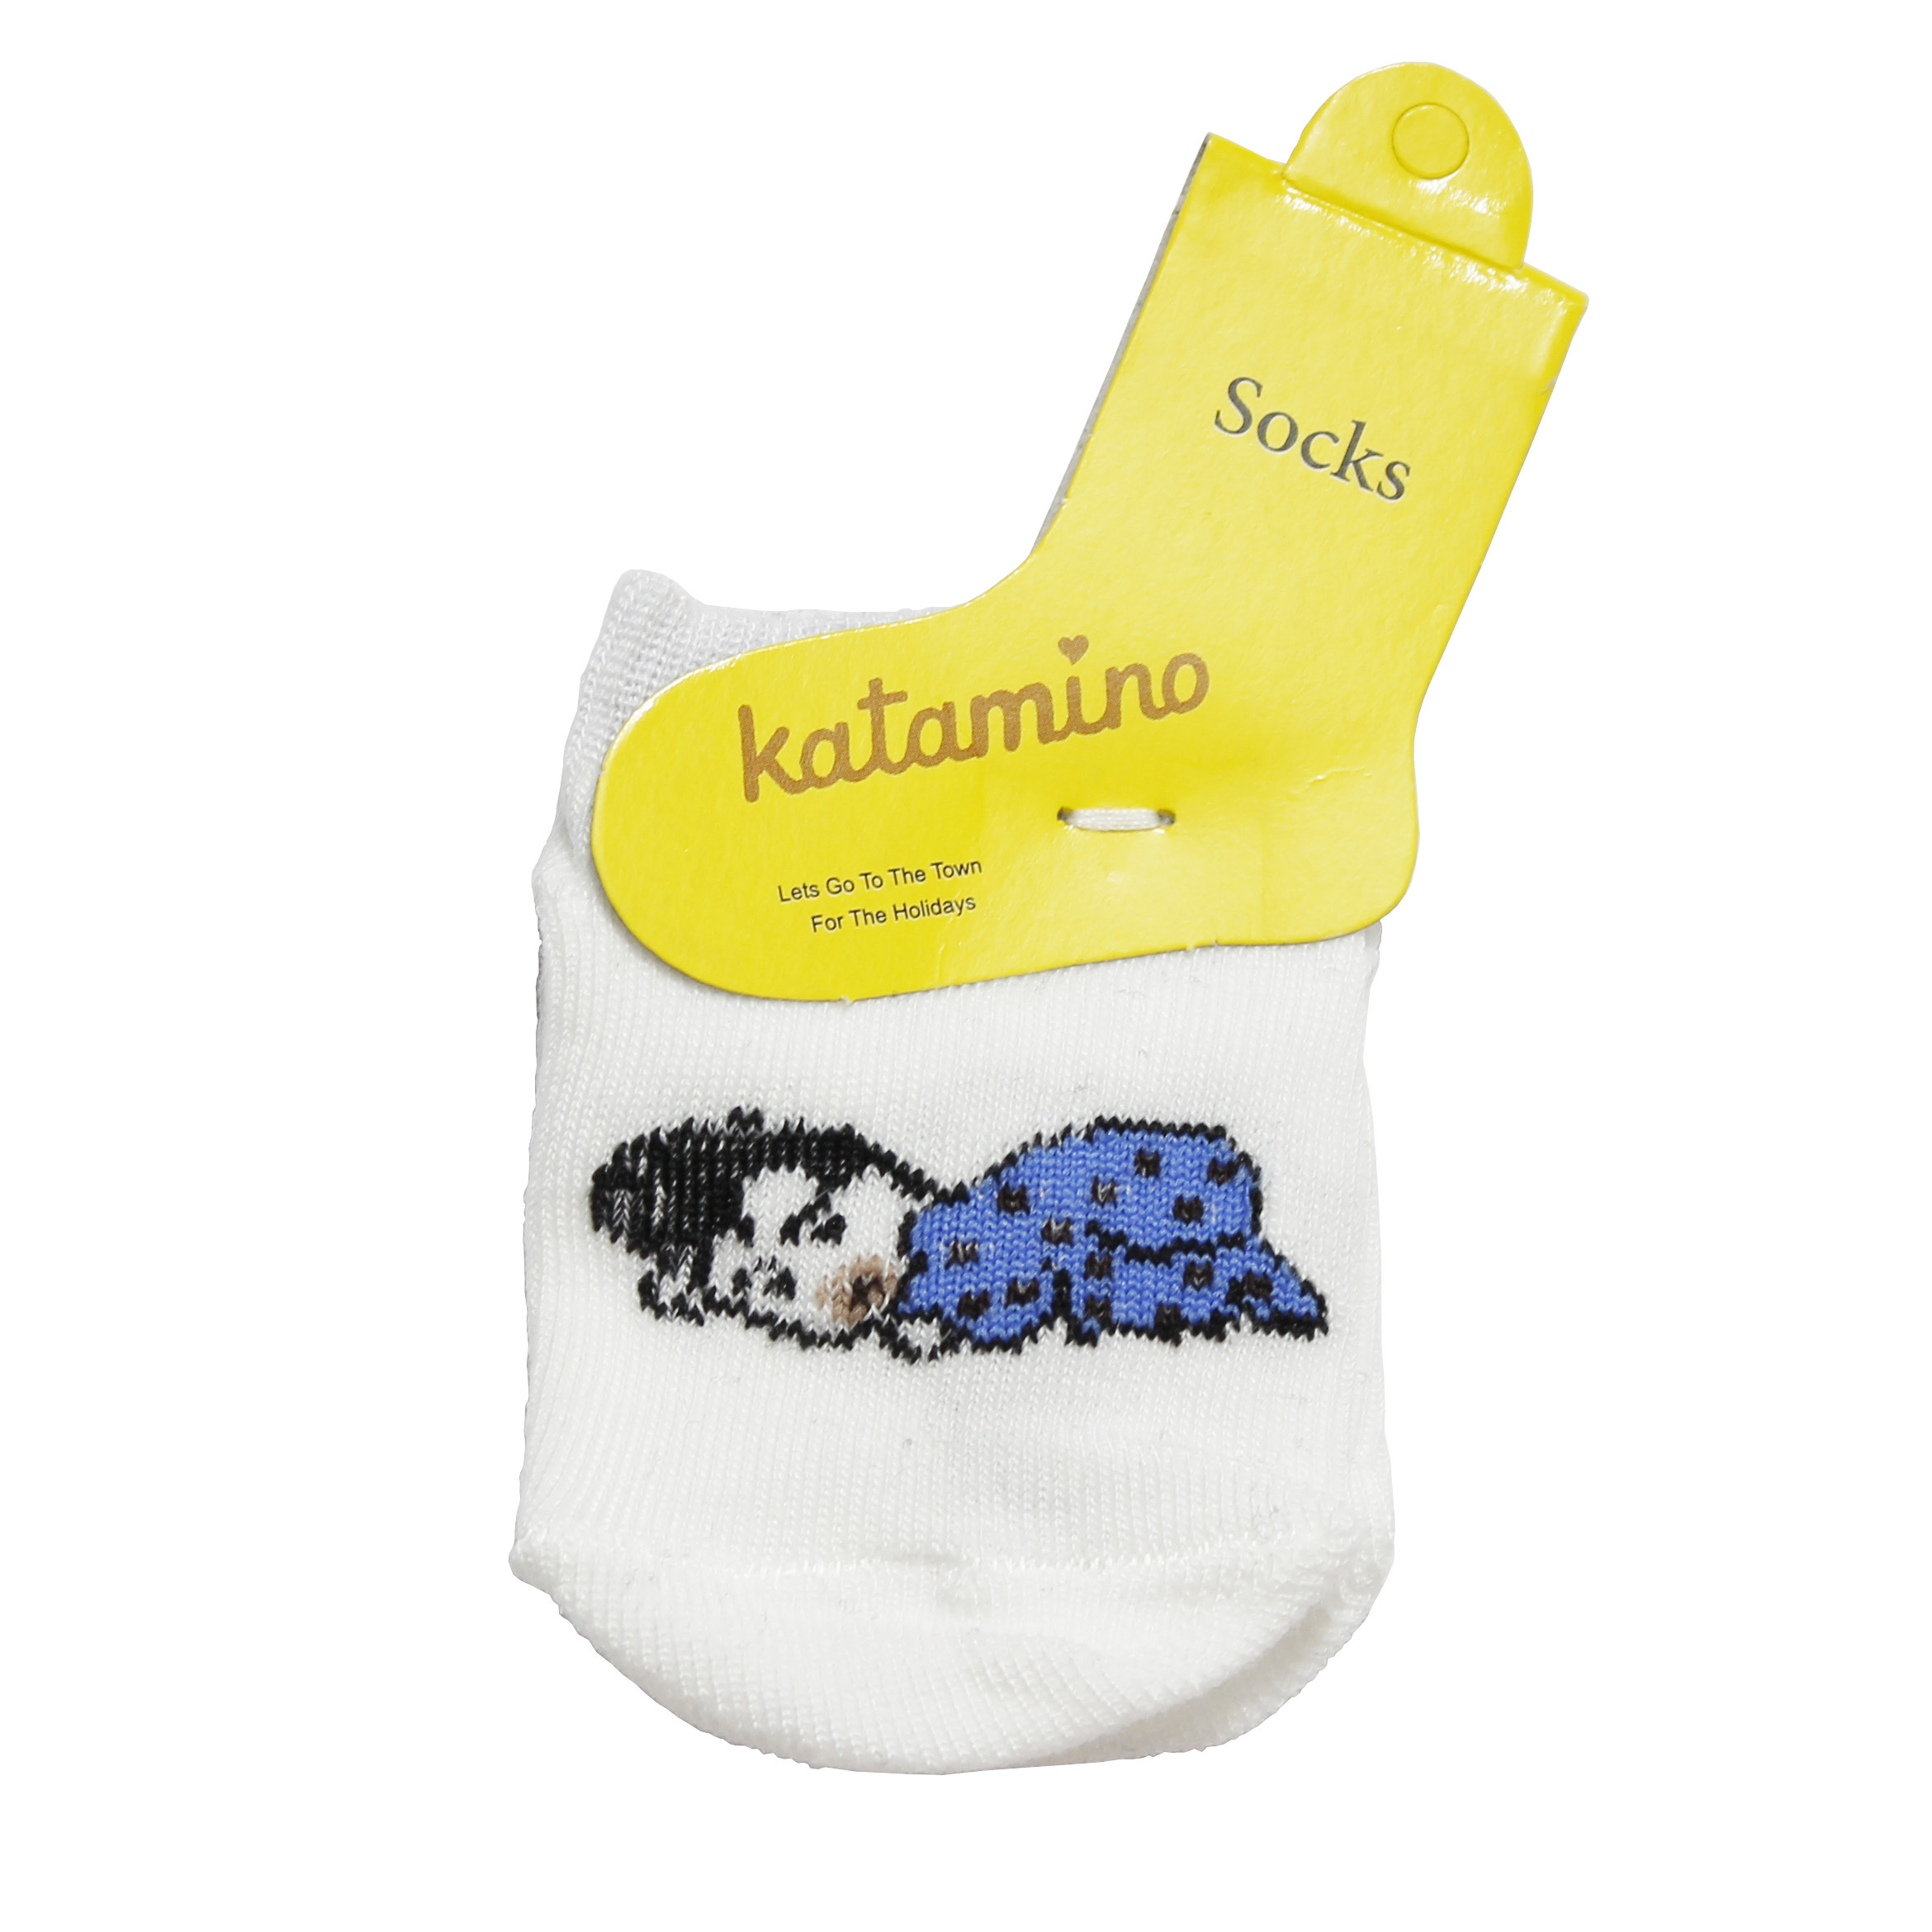 جوراب نوزادی کاتامینو کد B401